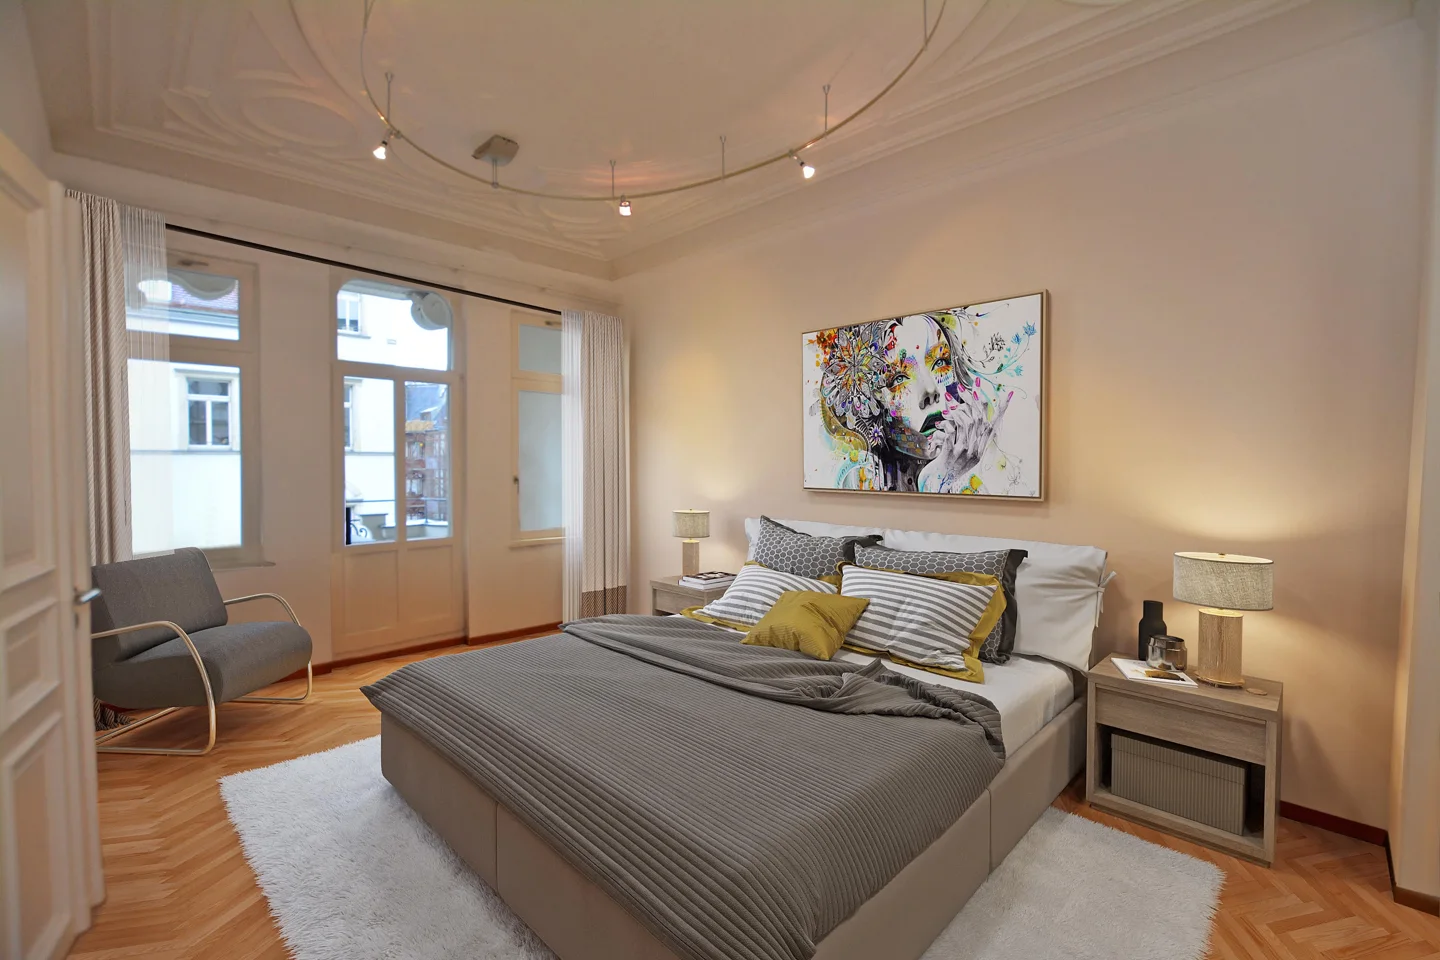 Charmantes Altbau-Juwel: Großzügige 4,5-Zimmer-Wohnung mit Stuck und zwei Balkonen im begehrten Waldstraßenviertel